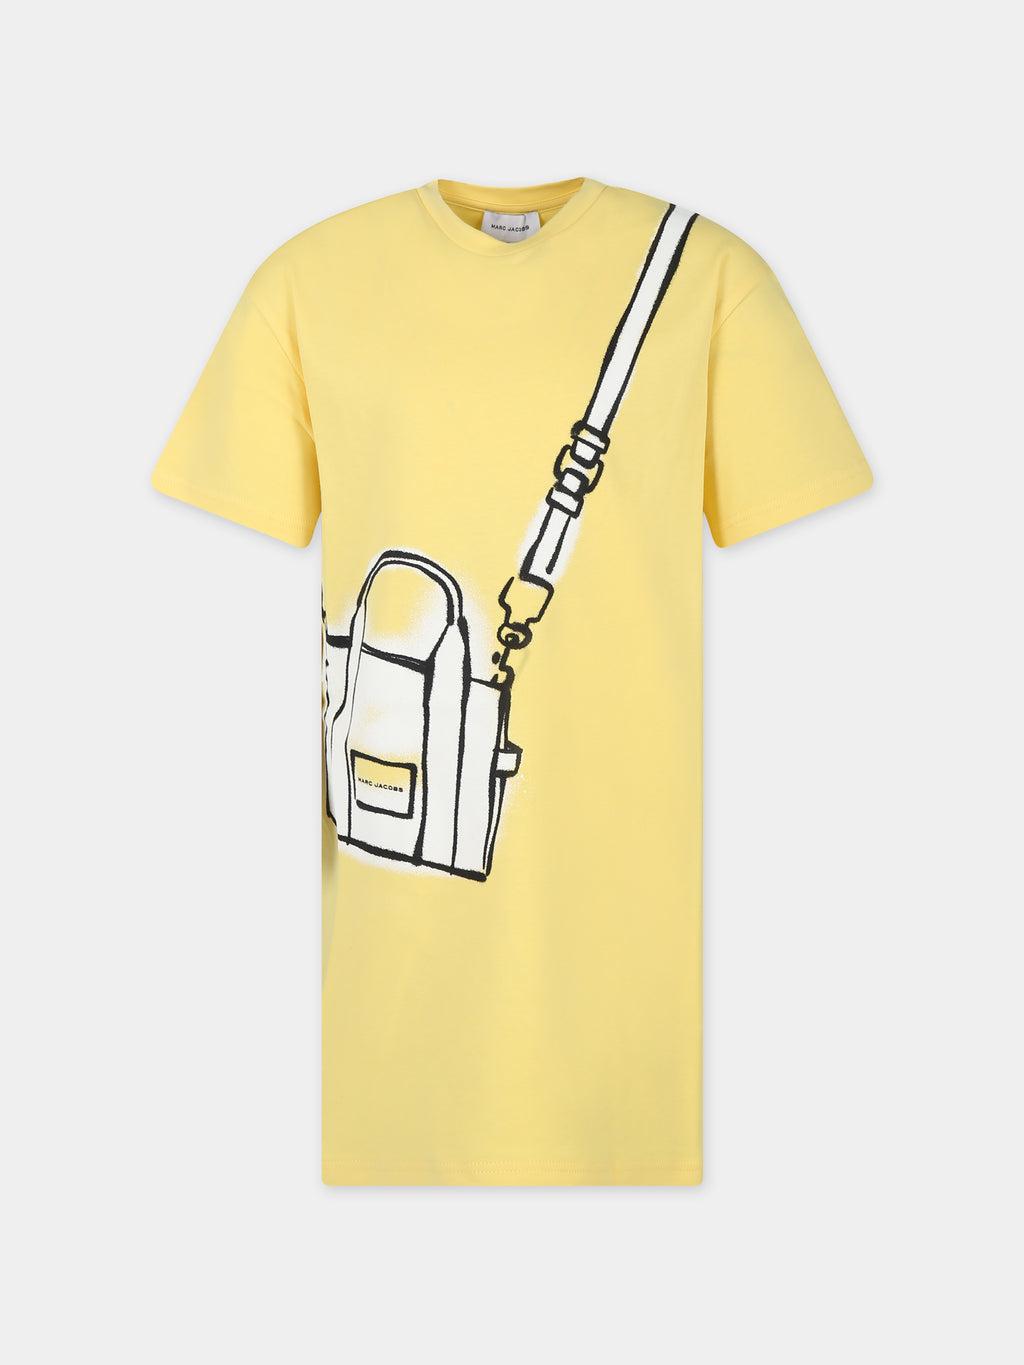 Robe jaune pour fille avec imprimé sac et logo